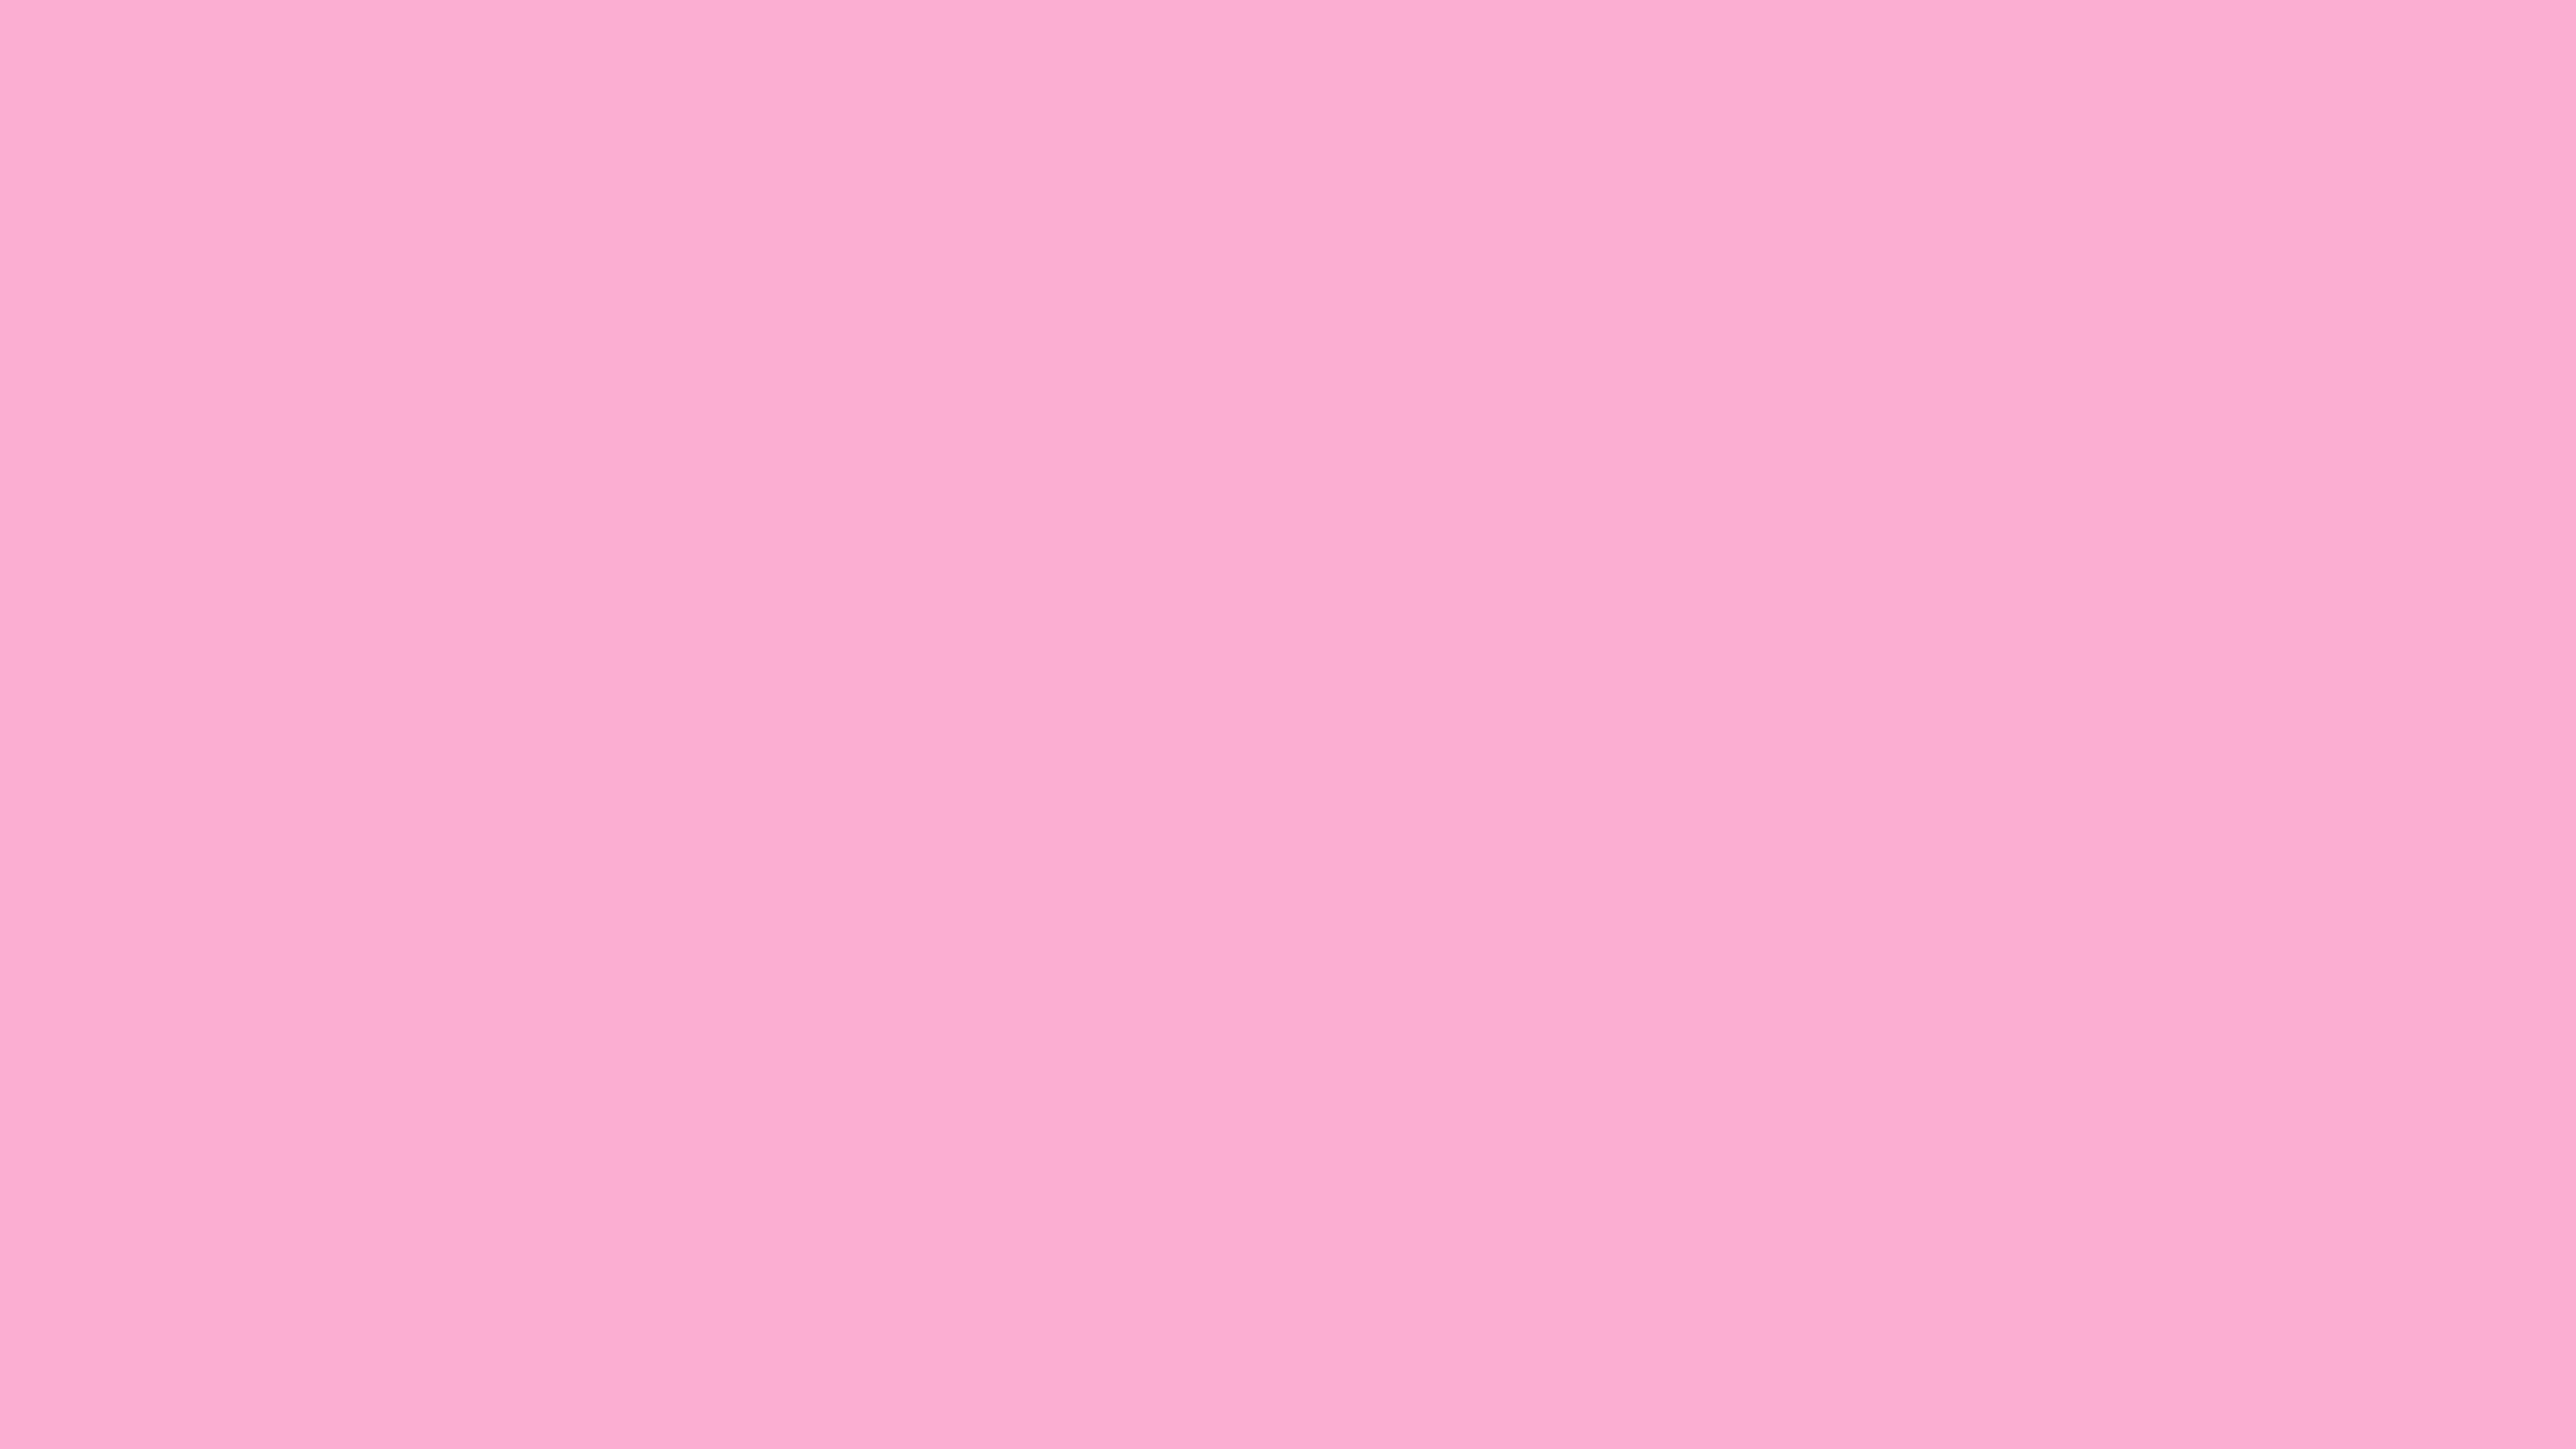 4096x2304 Lavender Pink Solid Color Background